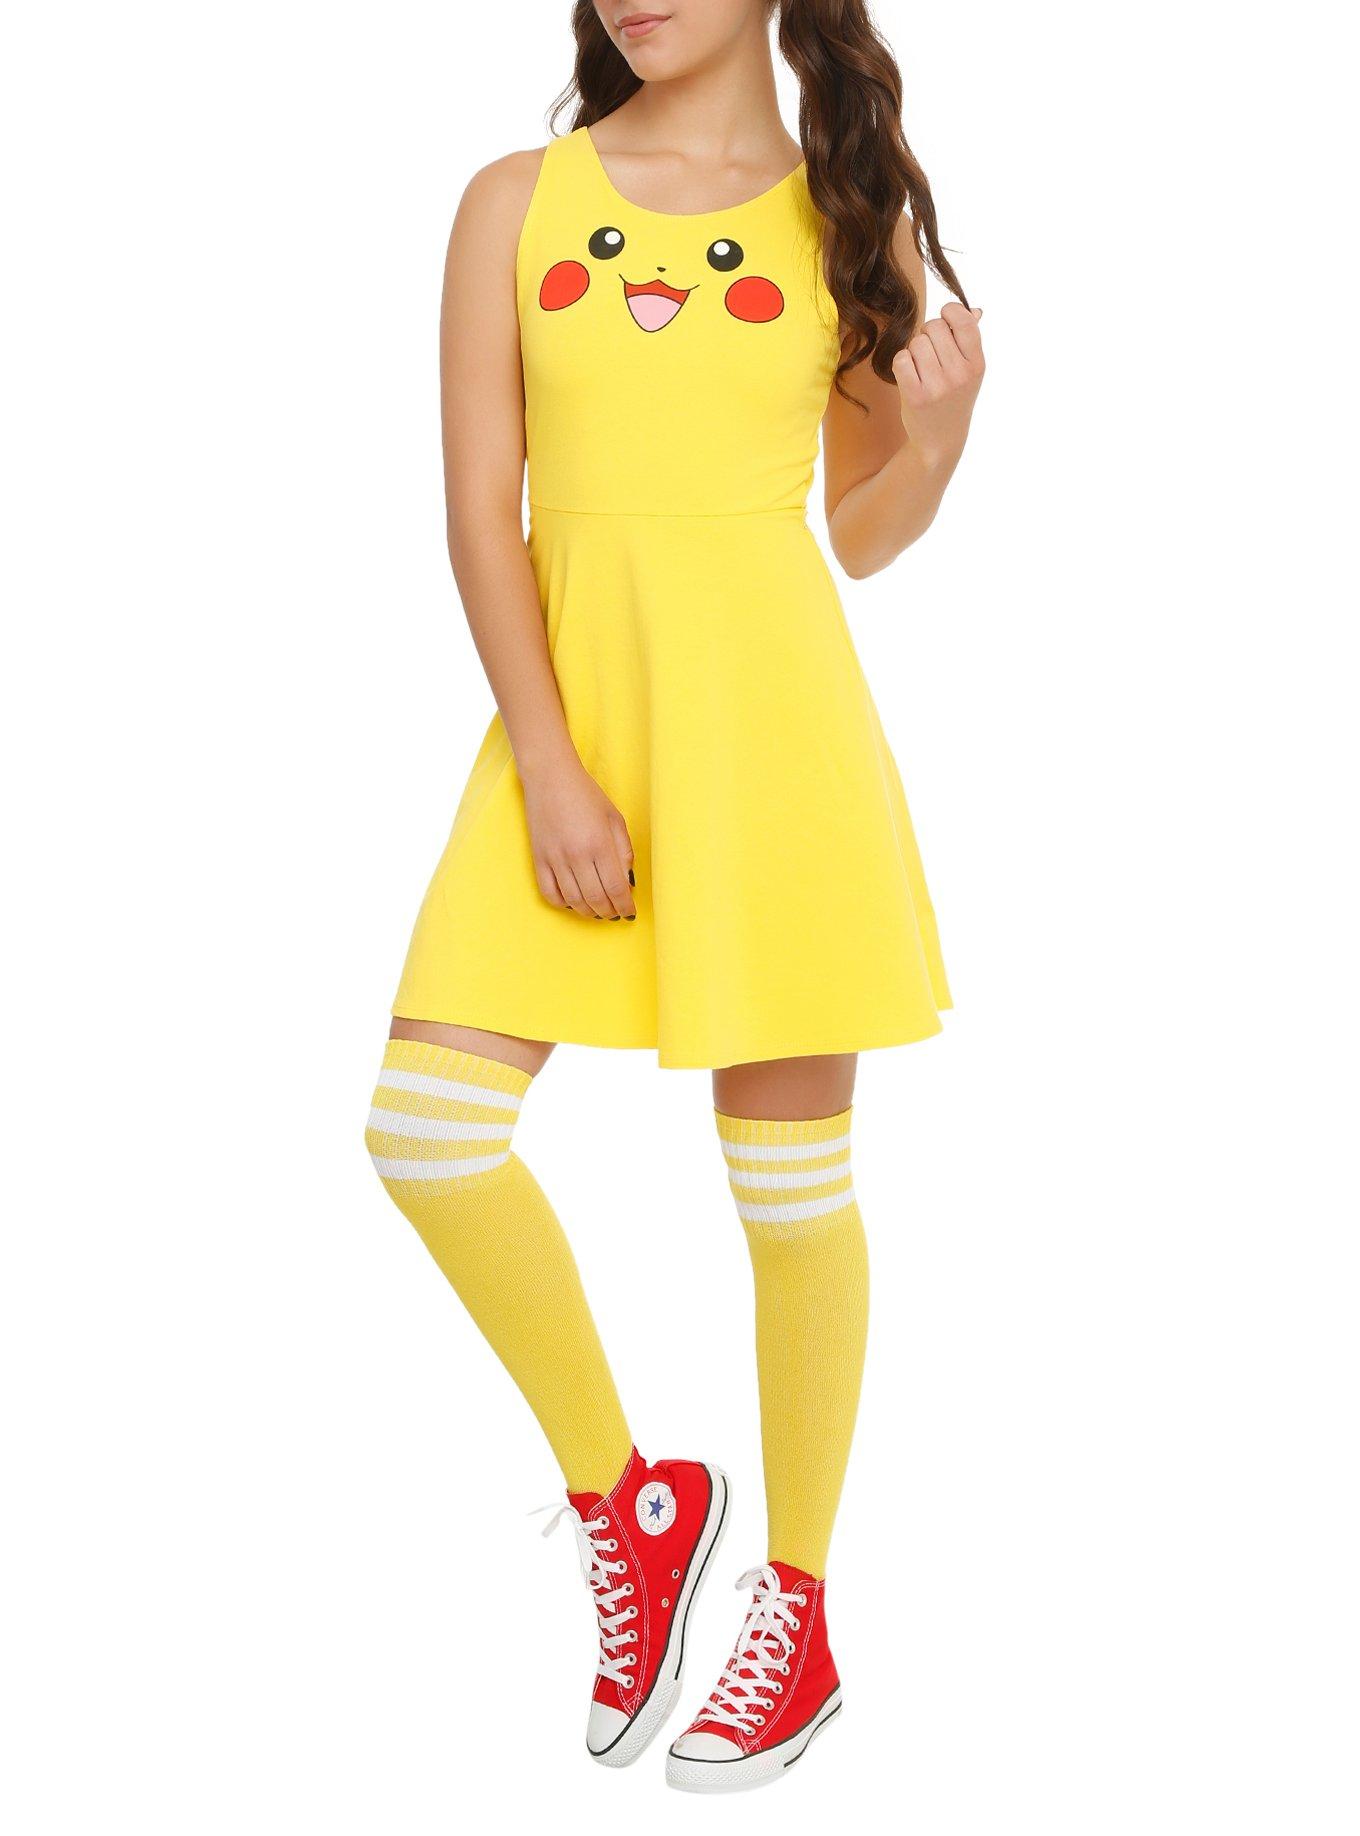 pokemon dress